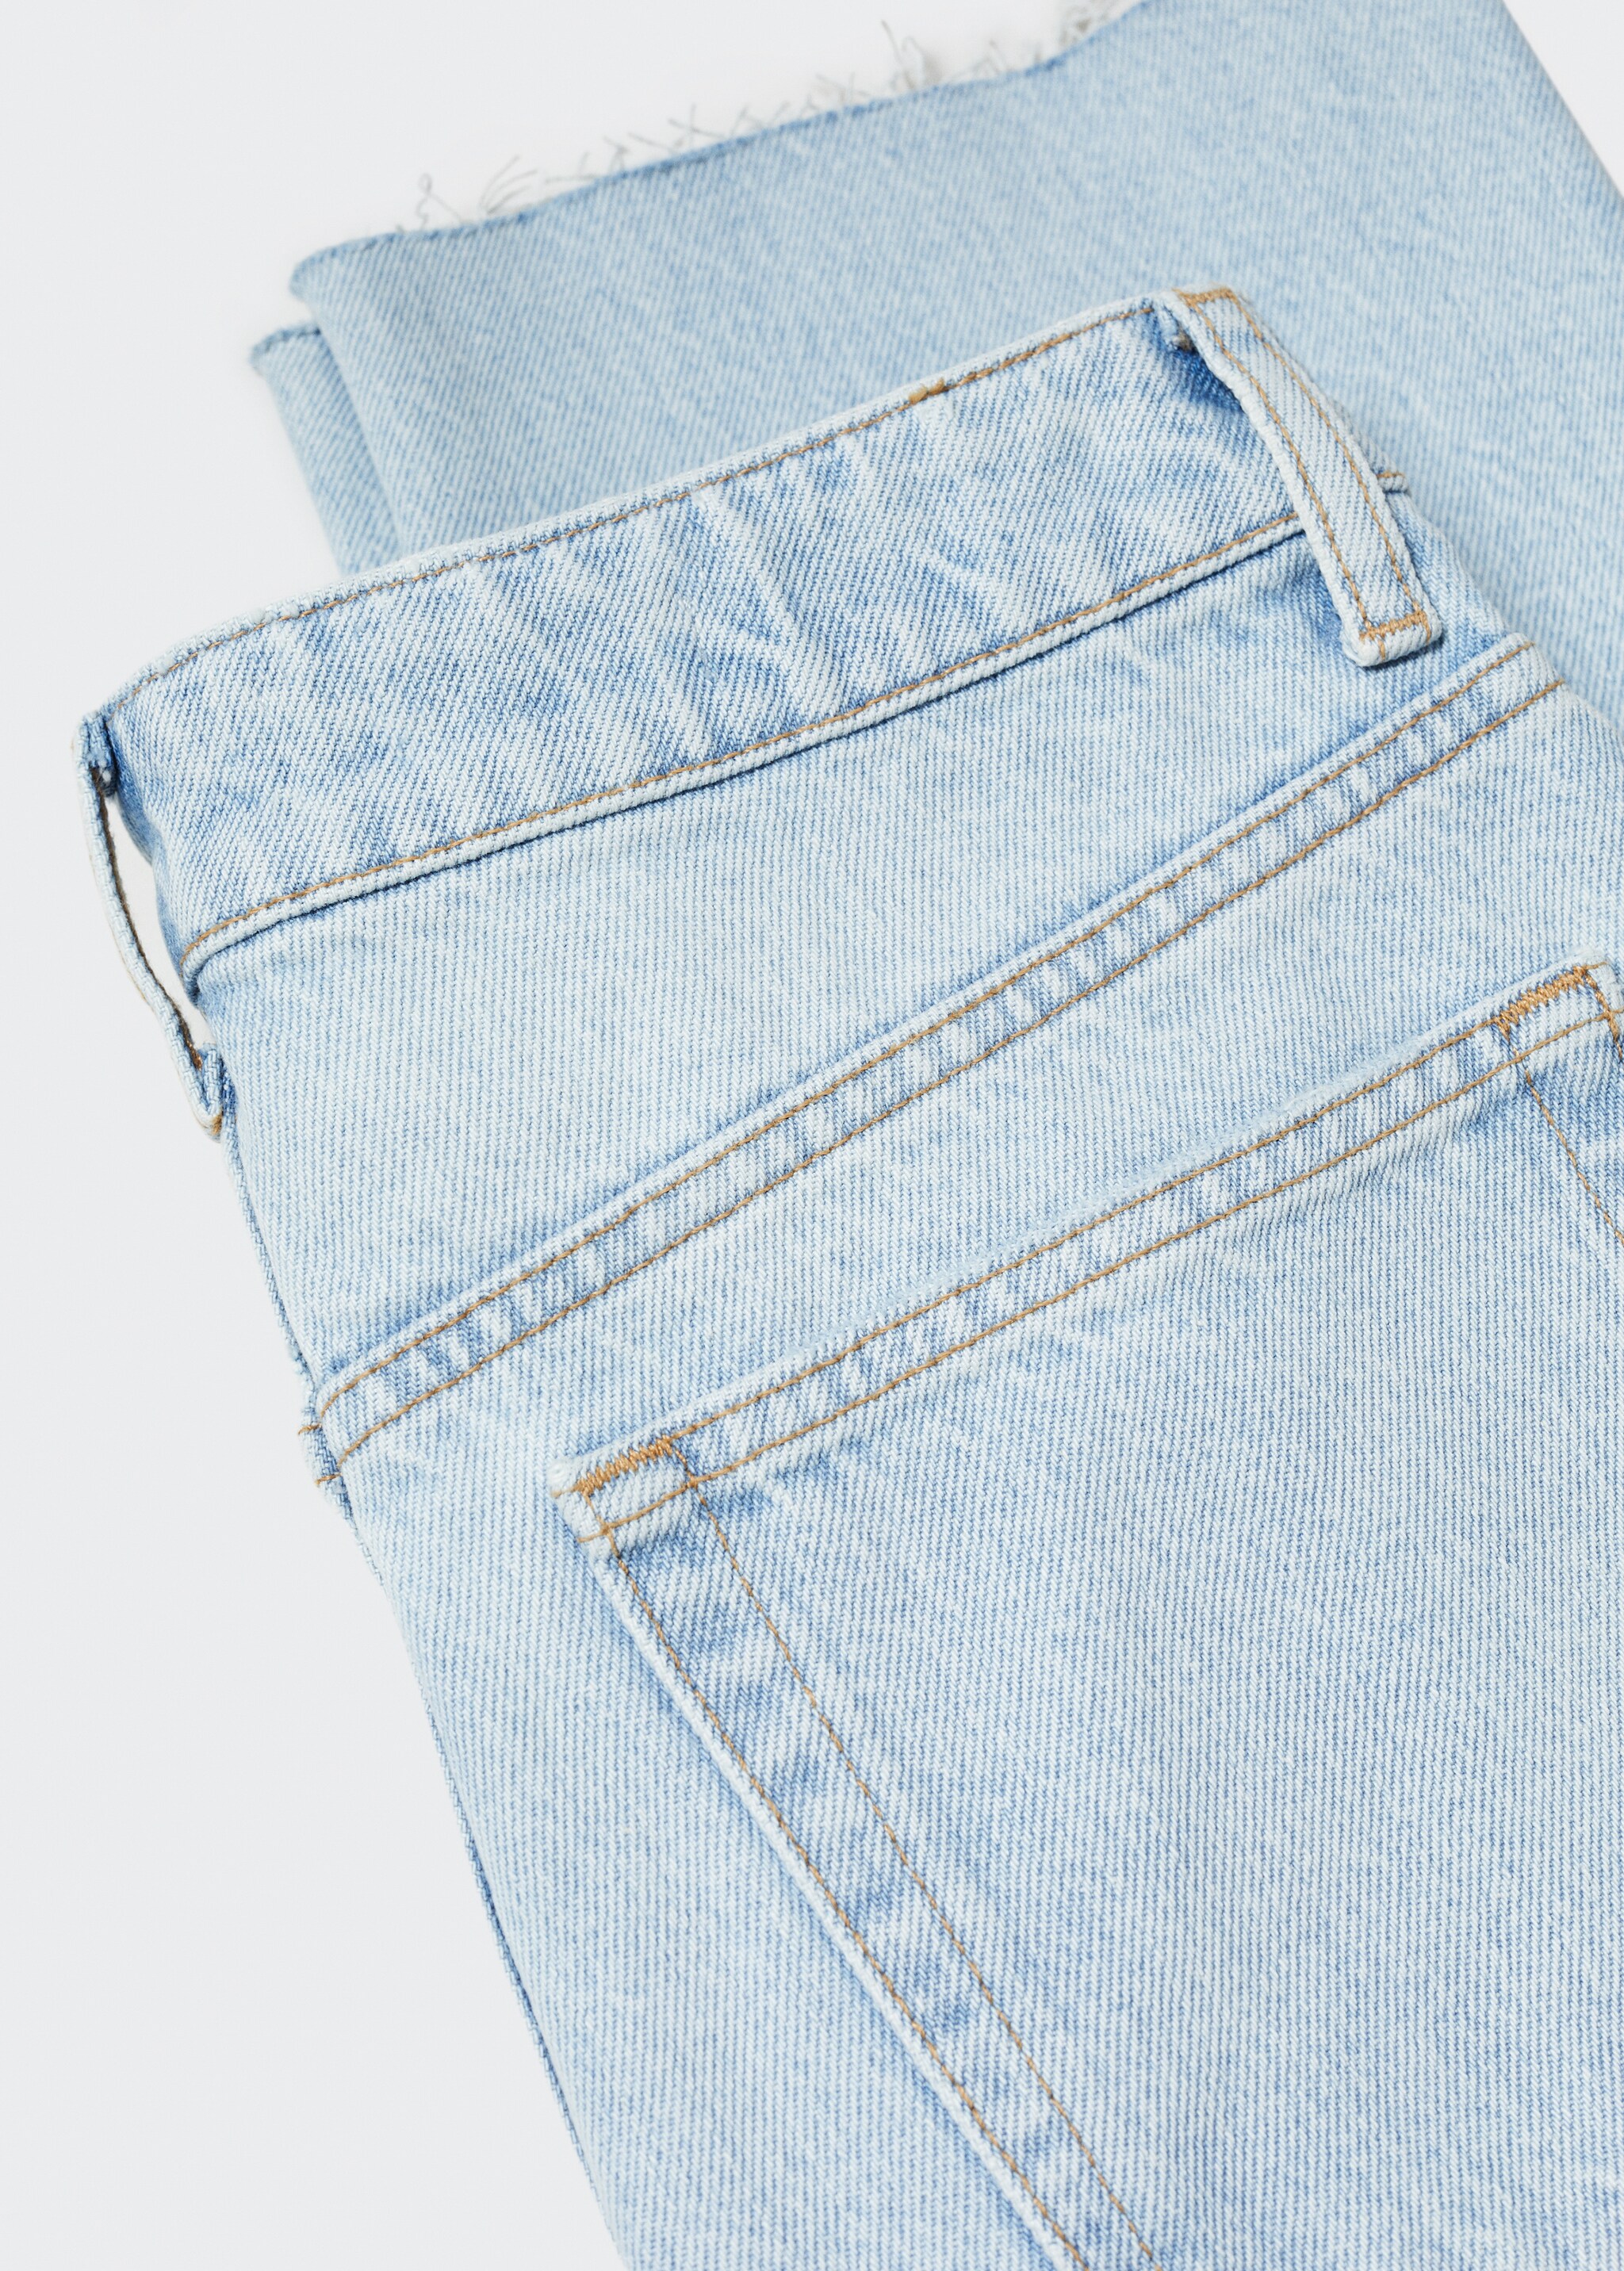 Gerade Jeans mit hohem Bund - Detail des Artikels 8